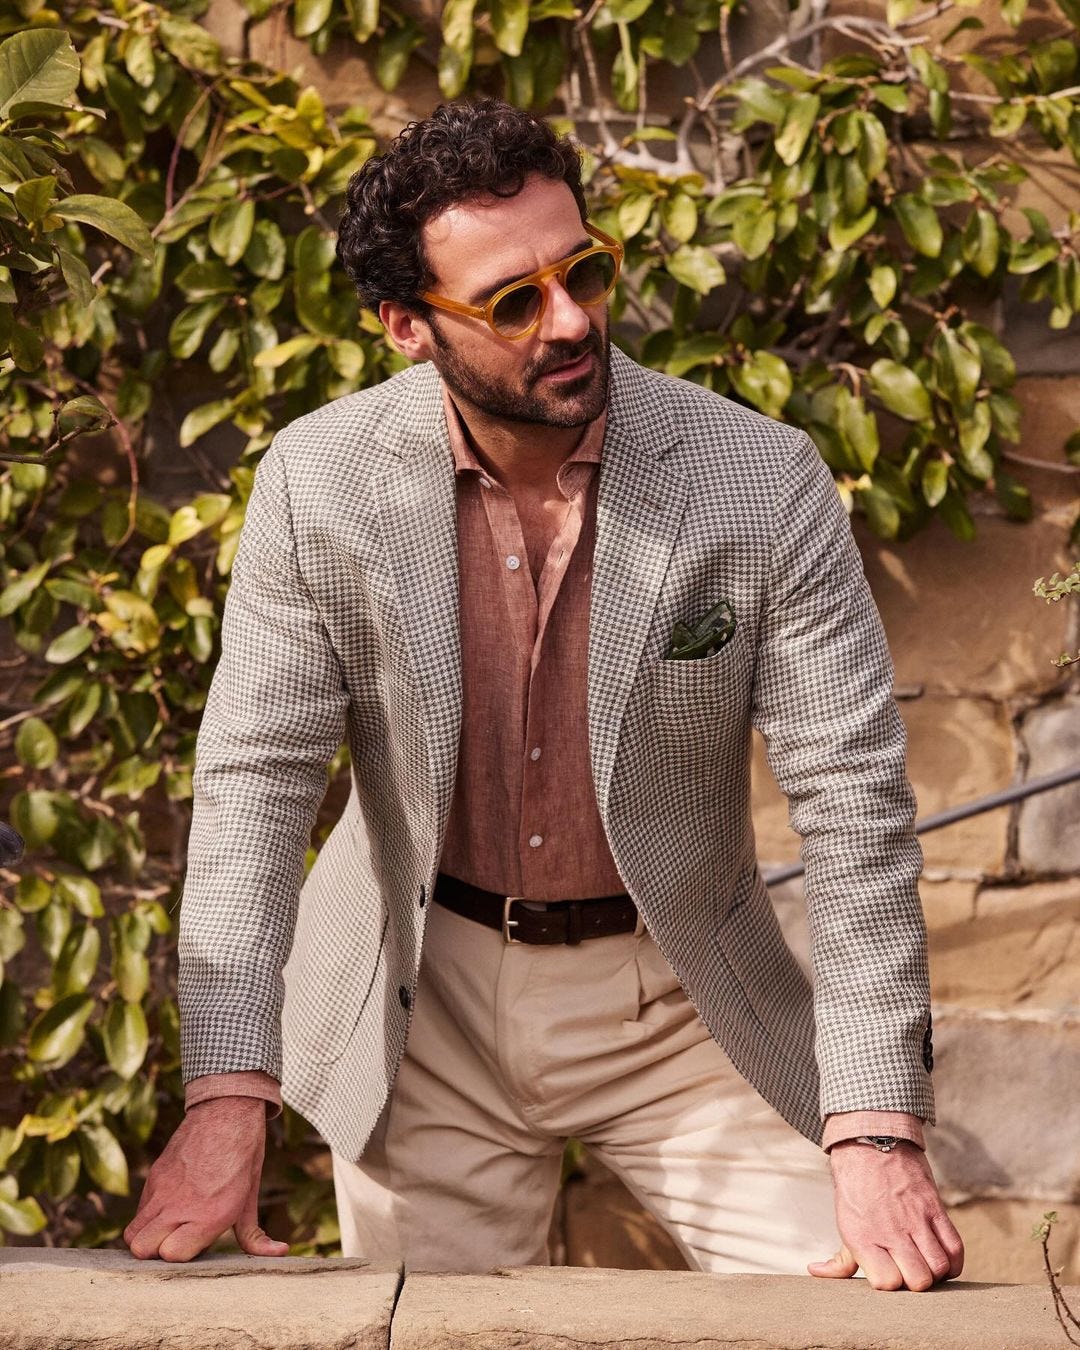 Italian summer outfits inspiration for men, a man wearing a lightweight blazer, linen shirt, and tan pants